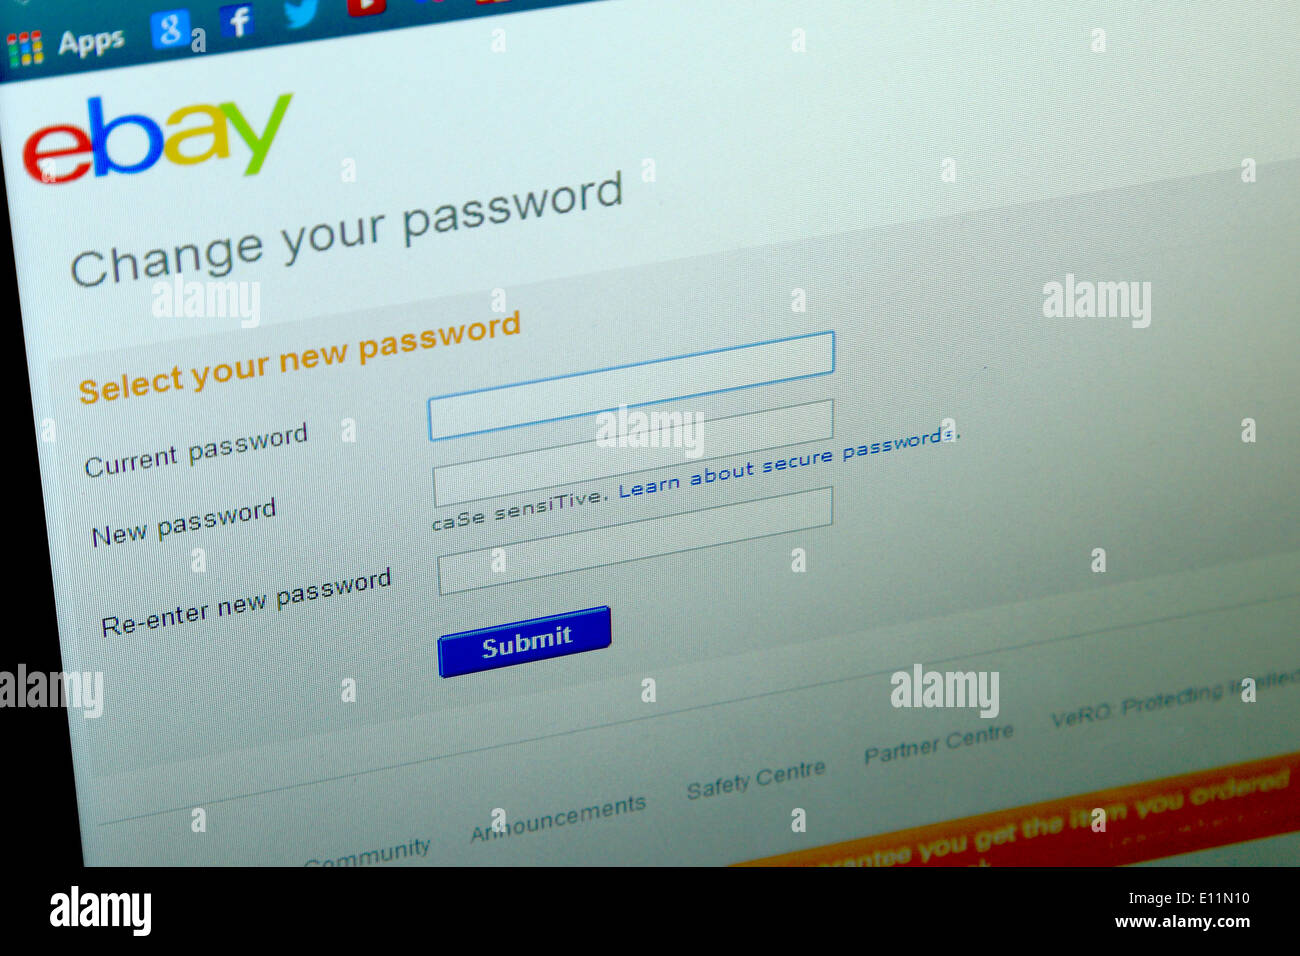 21. Mai 2014, warnt Ebay seine Benutzer ändern ihre Passwörter nach einer Datenschutzverletzung. Paul Stewart/Alamy News Stockfoto